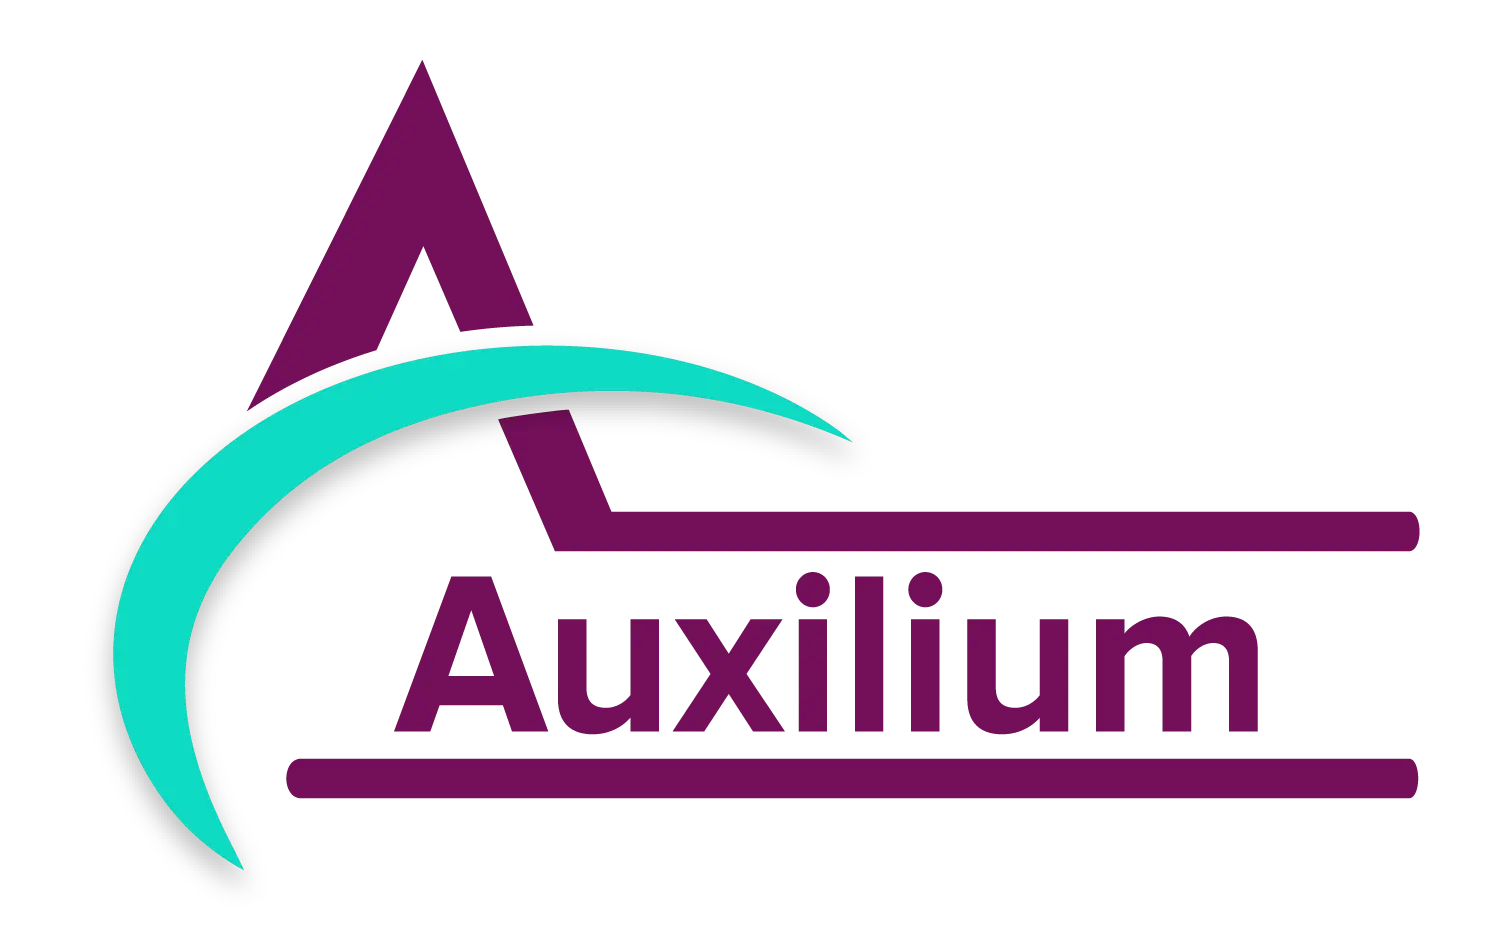 Auxilium